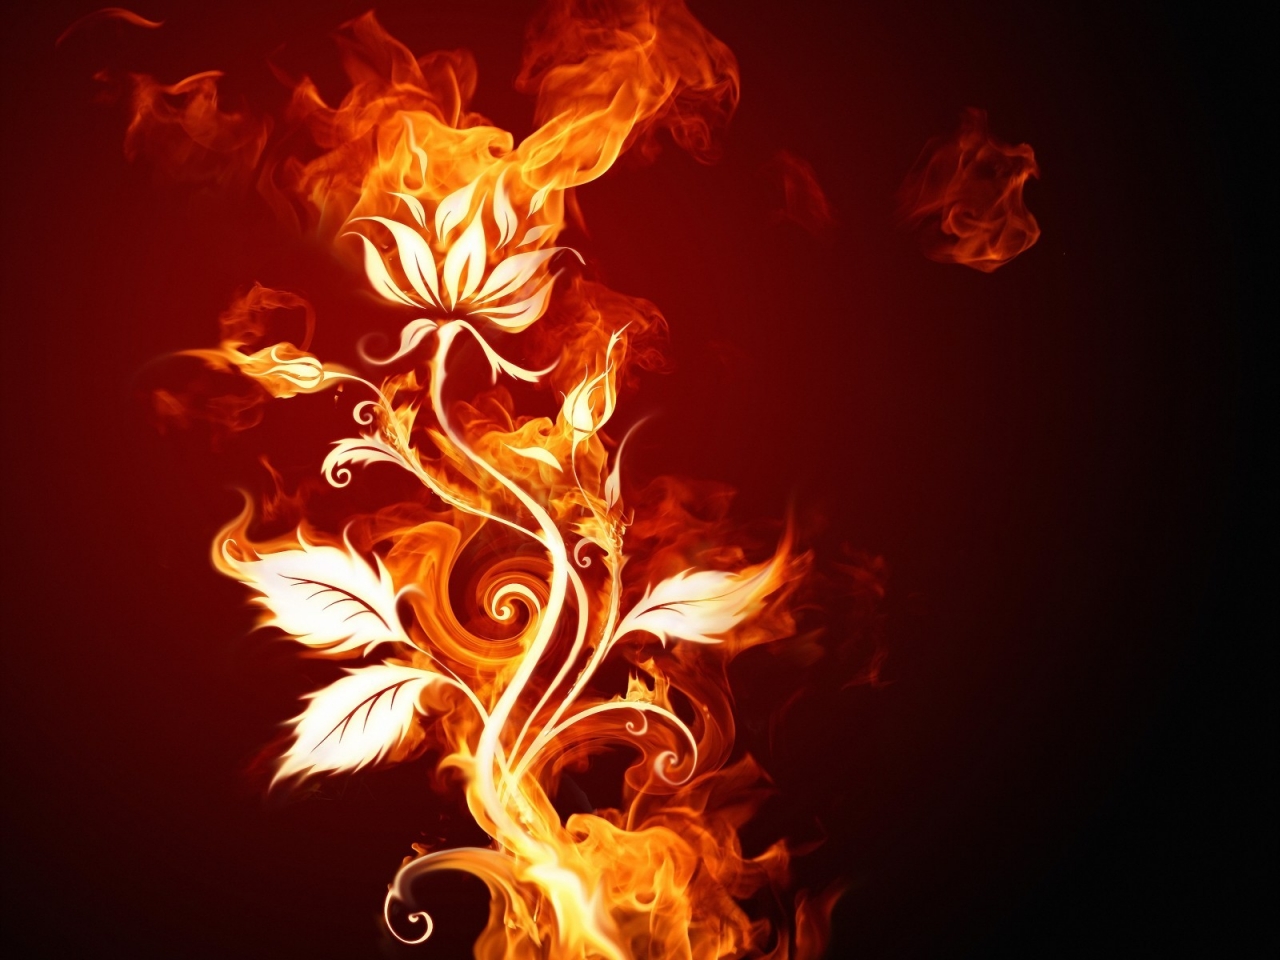 Burning Flower for 1280 x 960 resolution